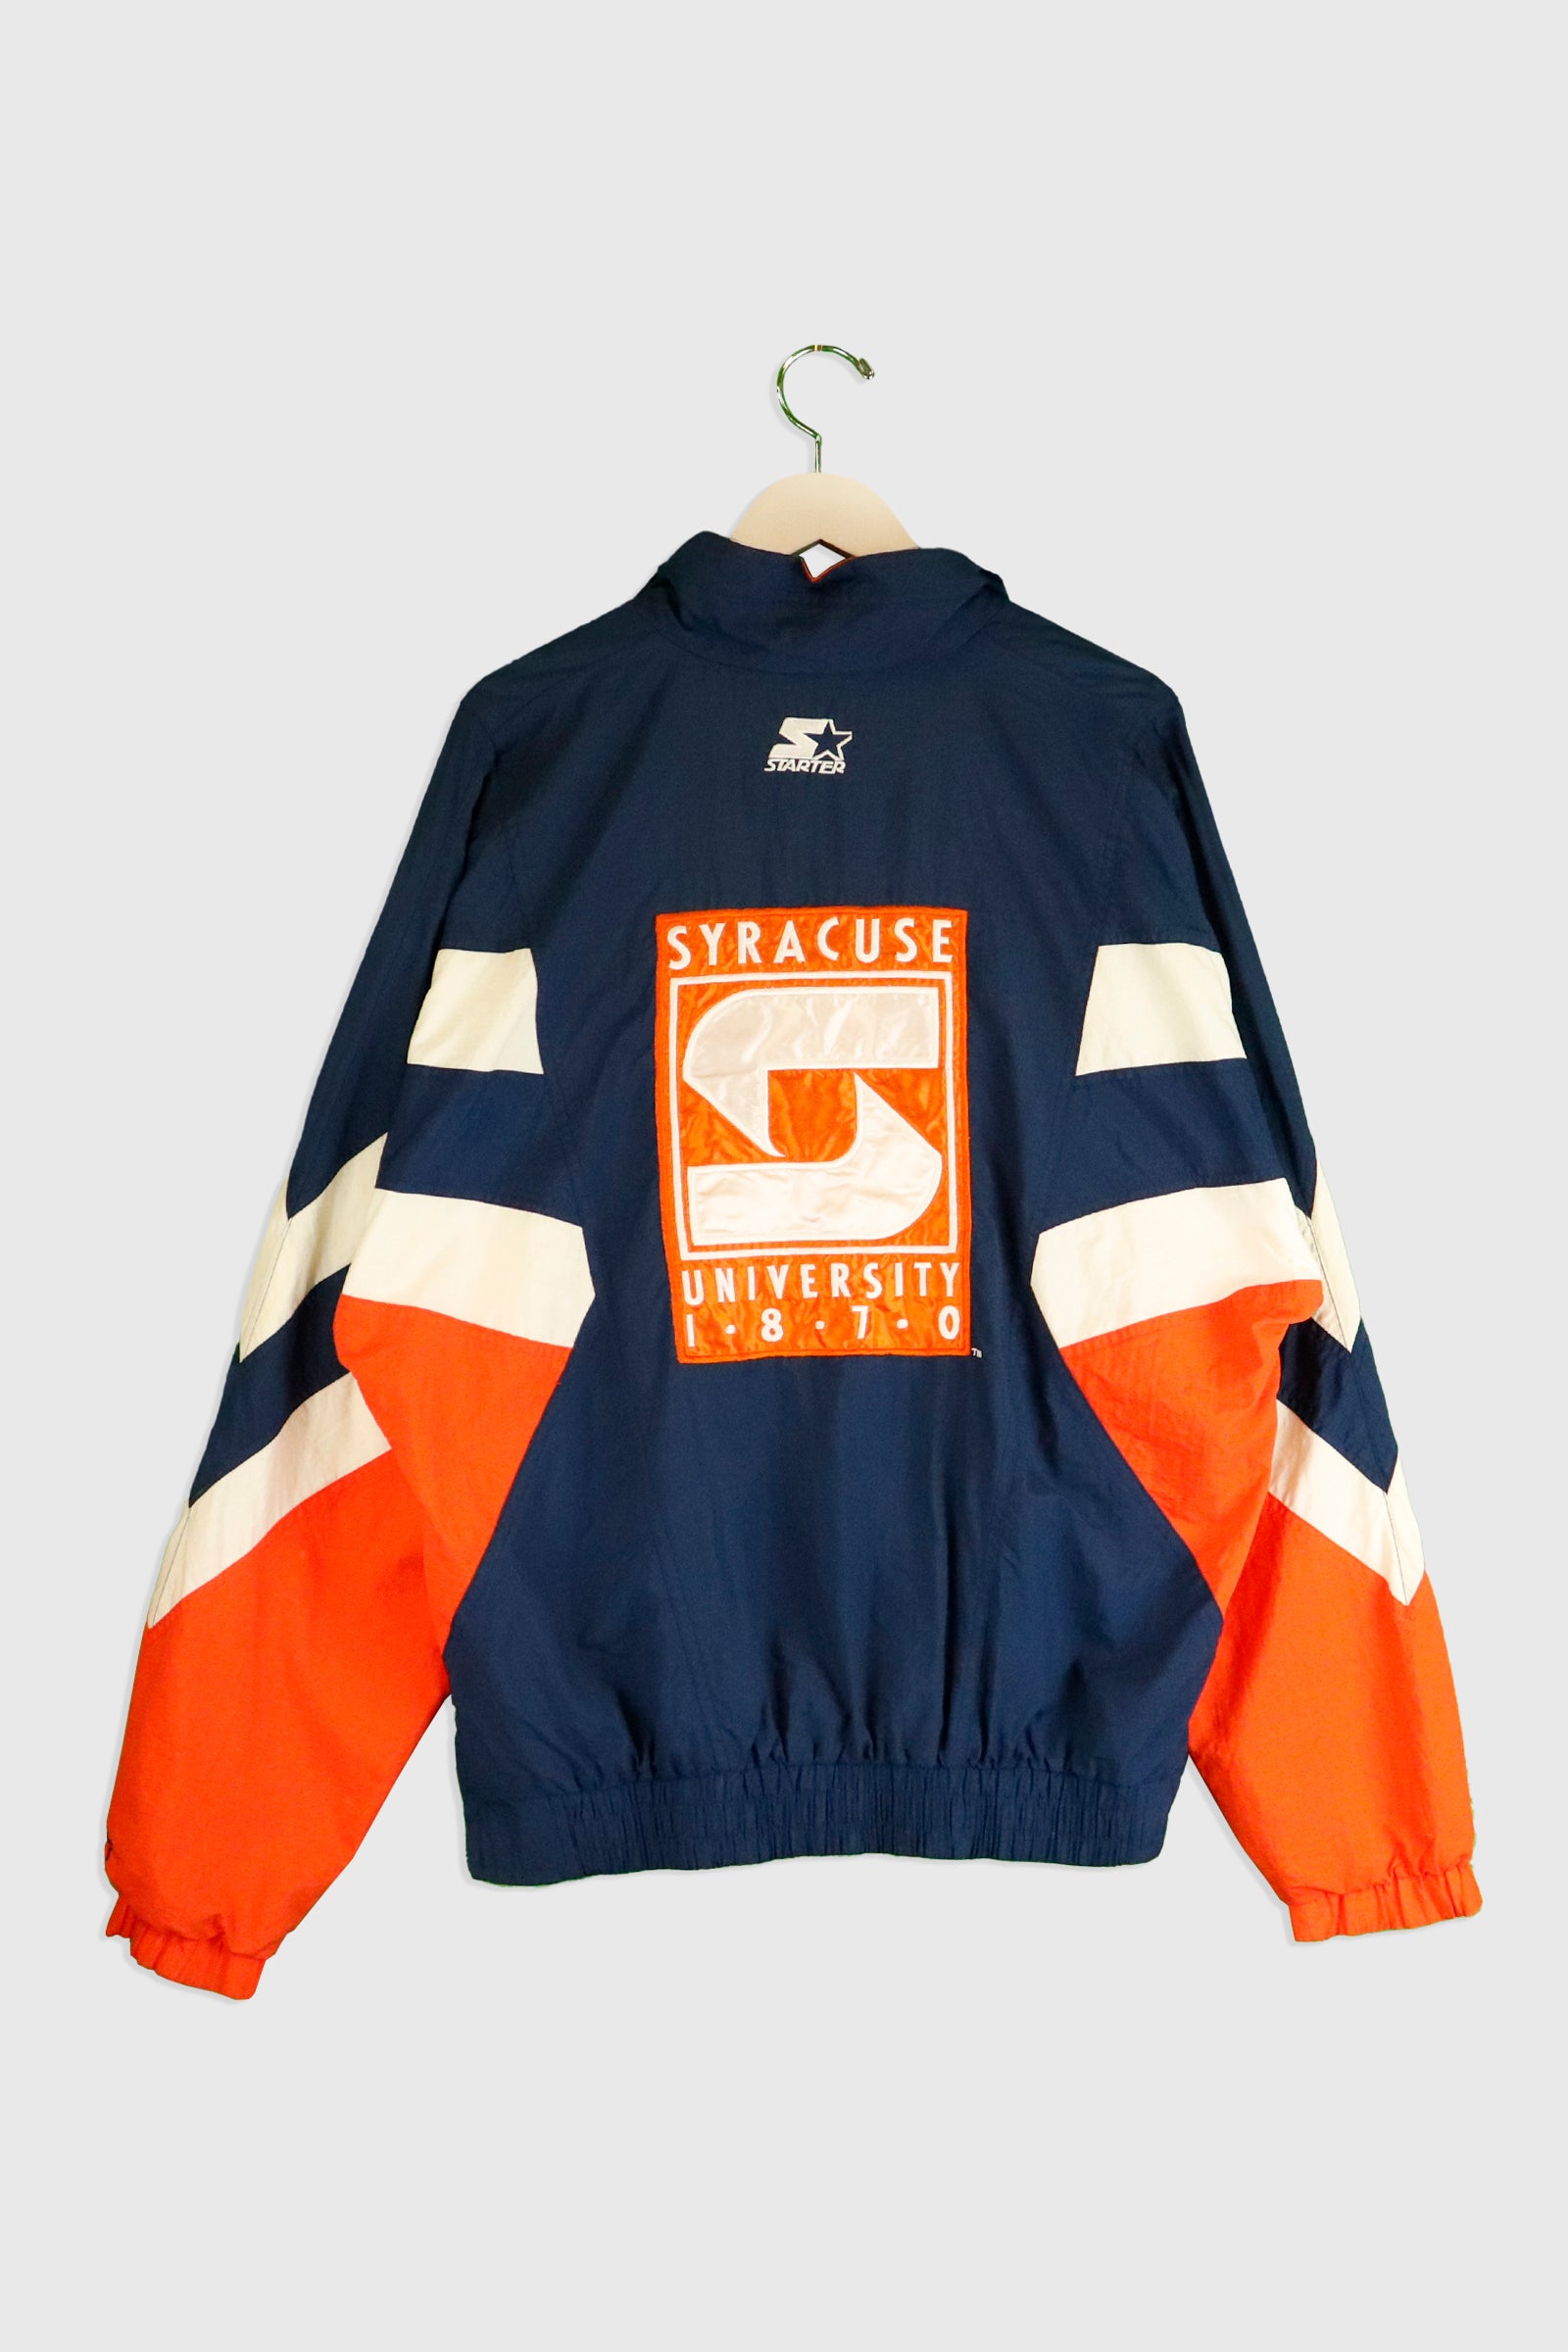 Vintage Starter 1/2 Zip Syracuse Parka Jacket Large J178 – Scholars & Champs